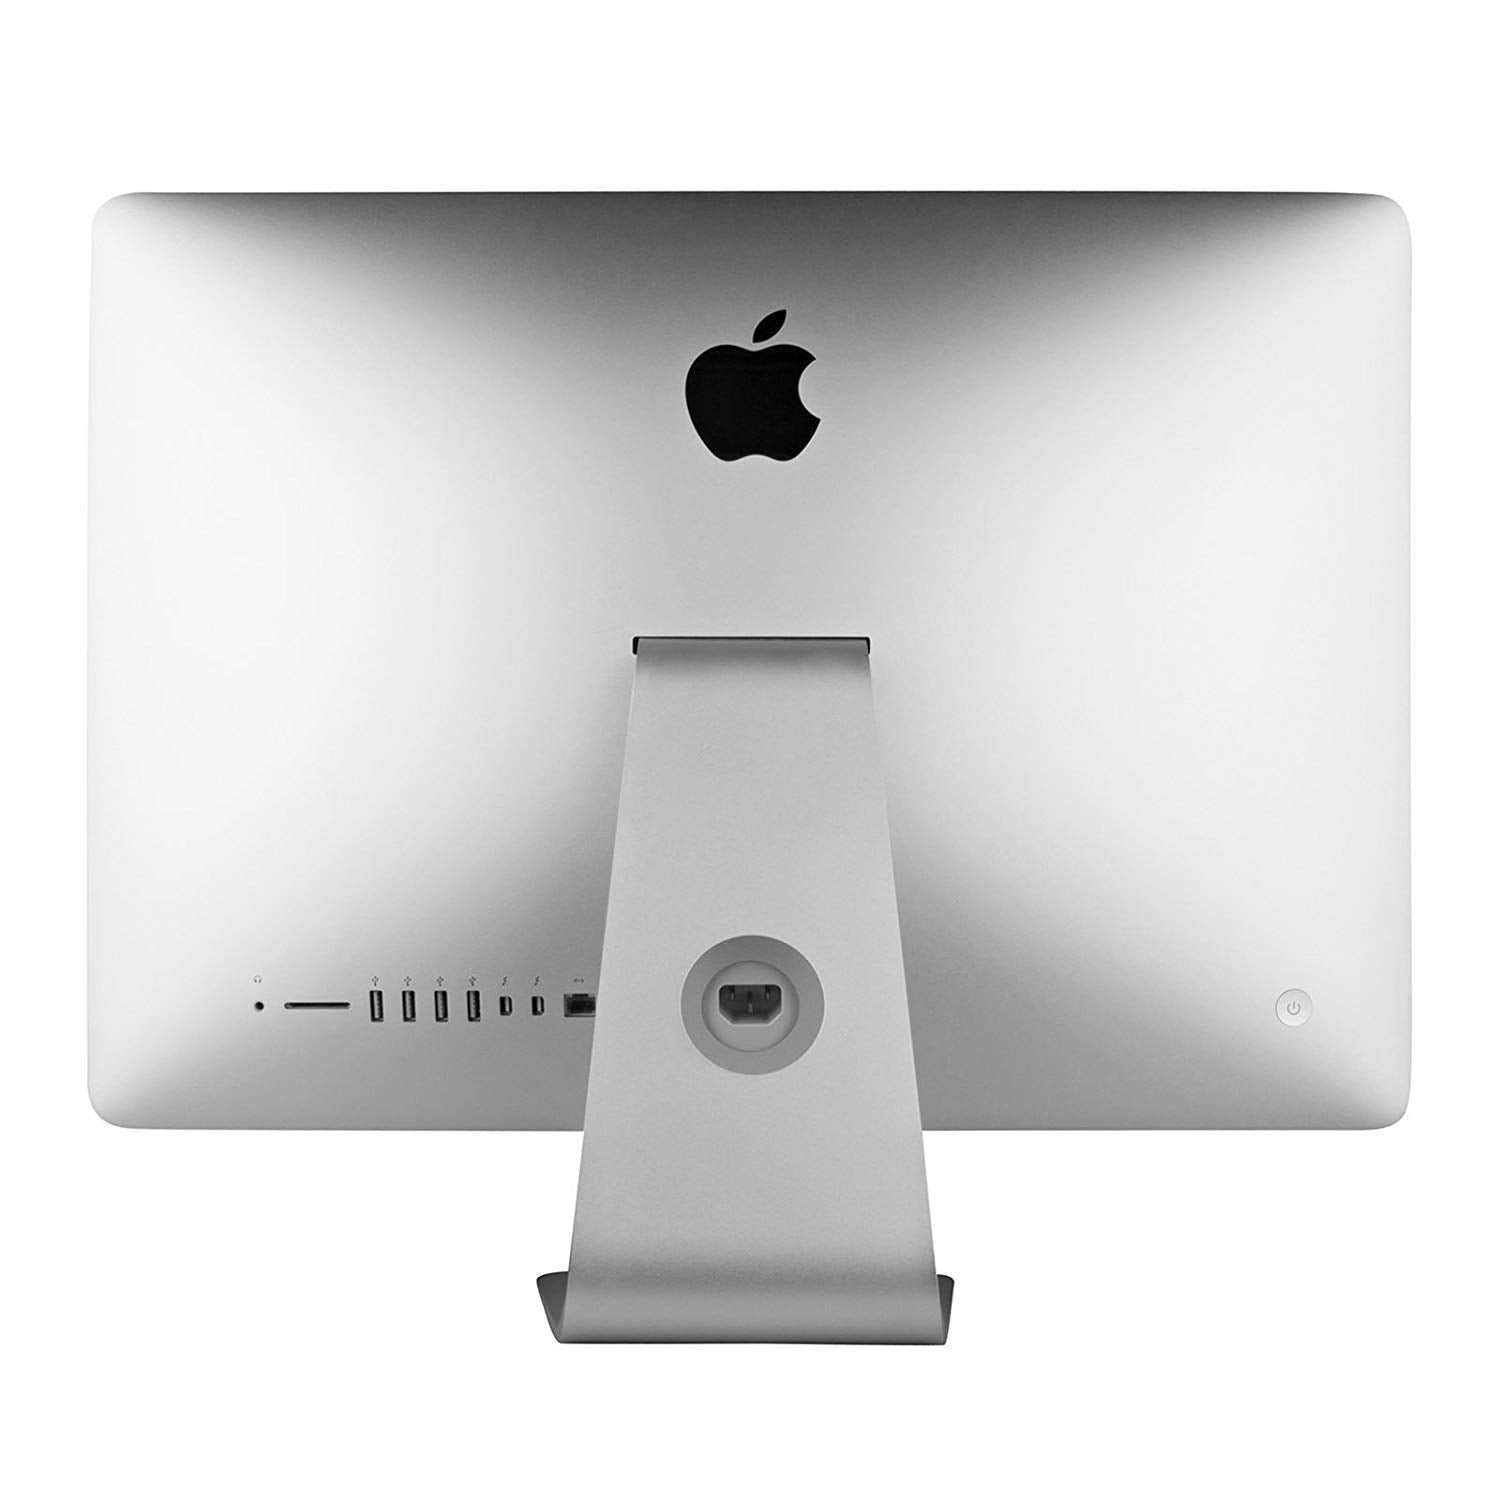 Apple iMac 21.5'' MD093LL/A (2012), Intel Core i5, 16GB RAM, 1TB, Silver